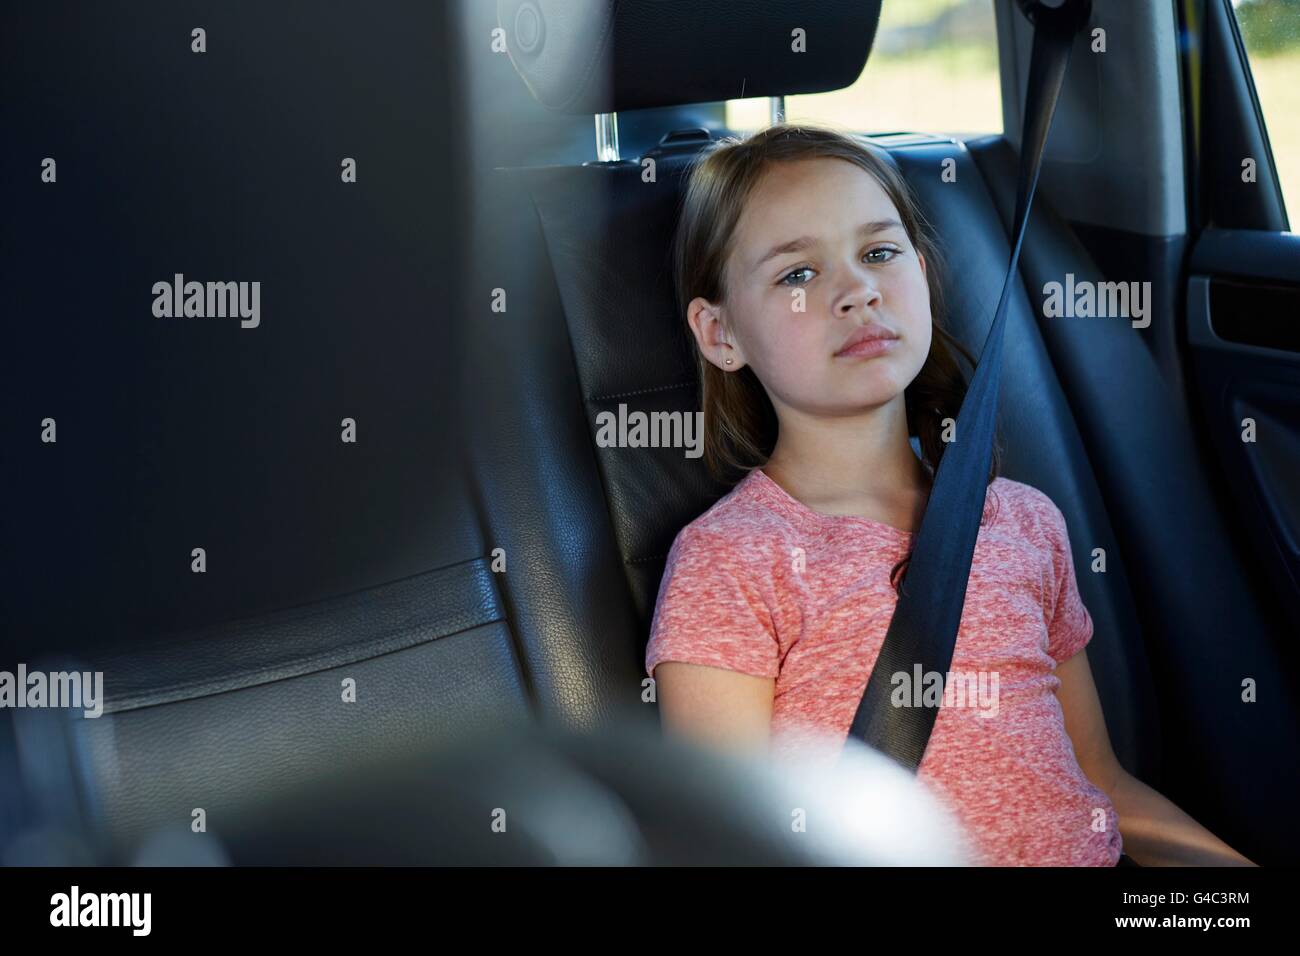 Parution du modèle. Fille dans le siège arrière de la voiture portant la ceinture de sécurité. Banque D'Images